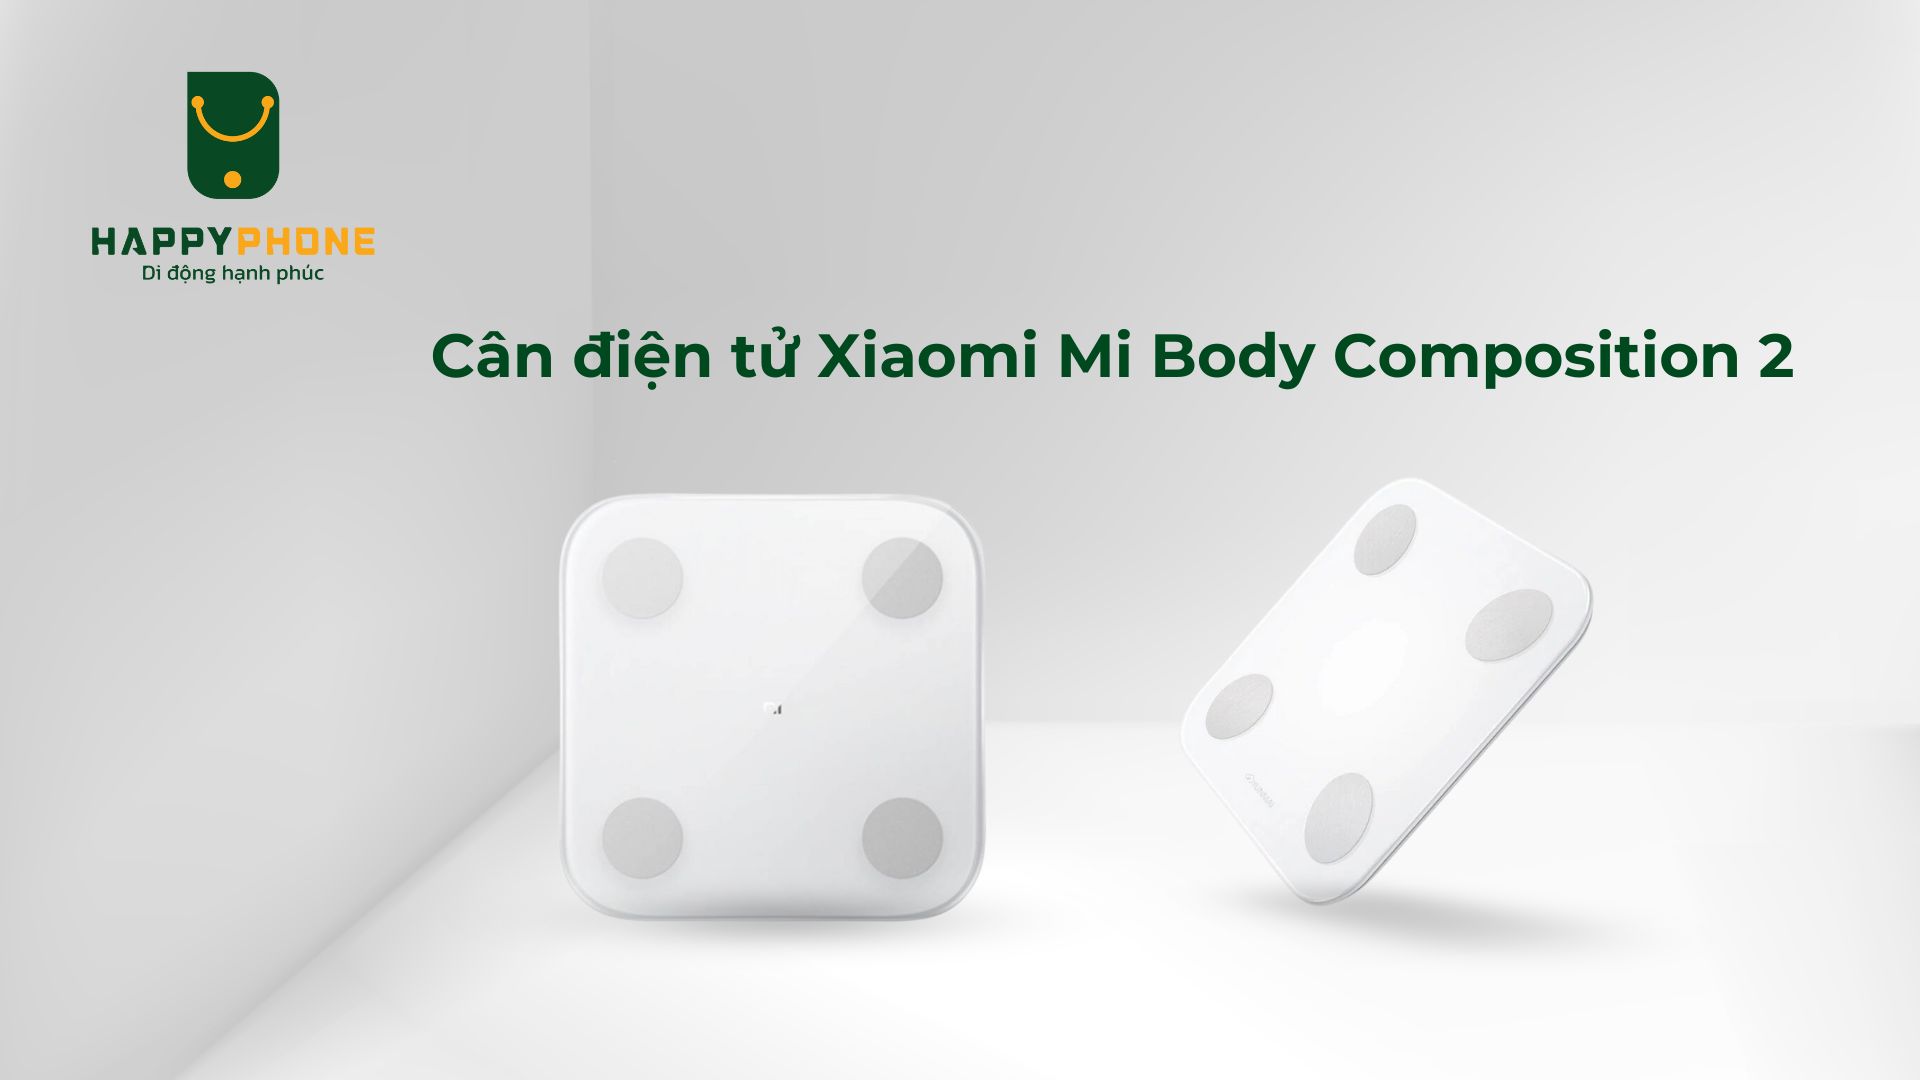 Thiết kế Cân điện tử Xiaomi Mi Body Composition 2